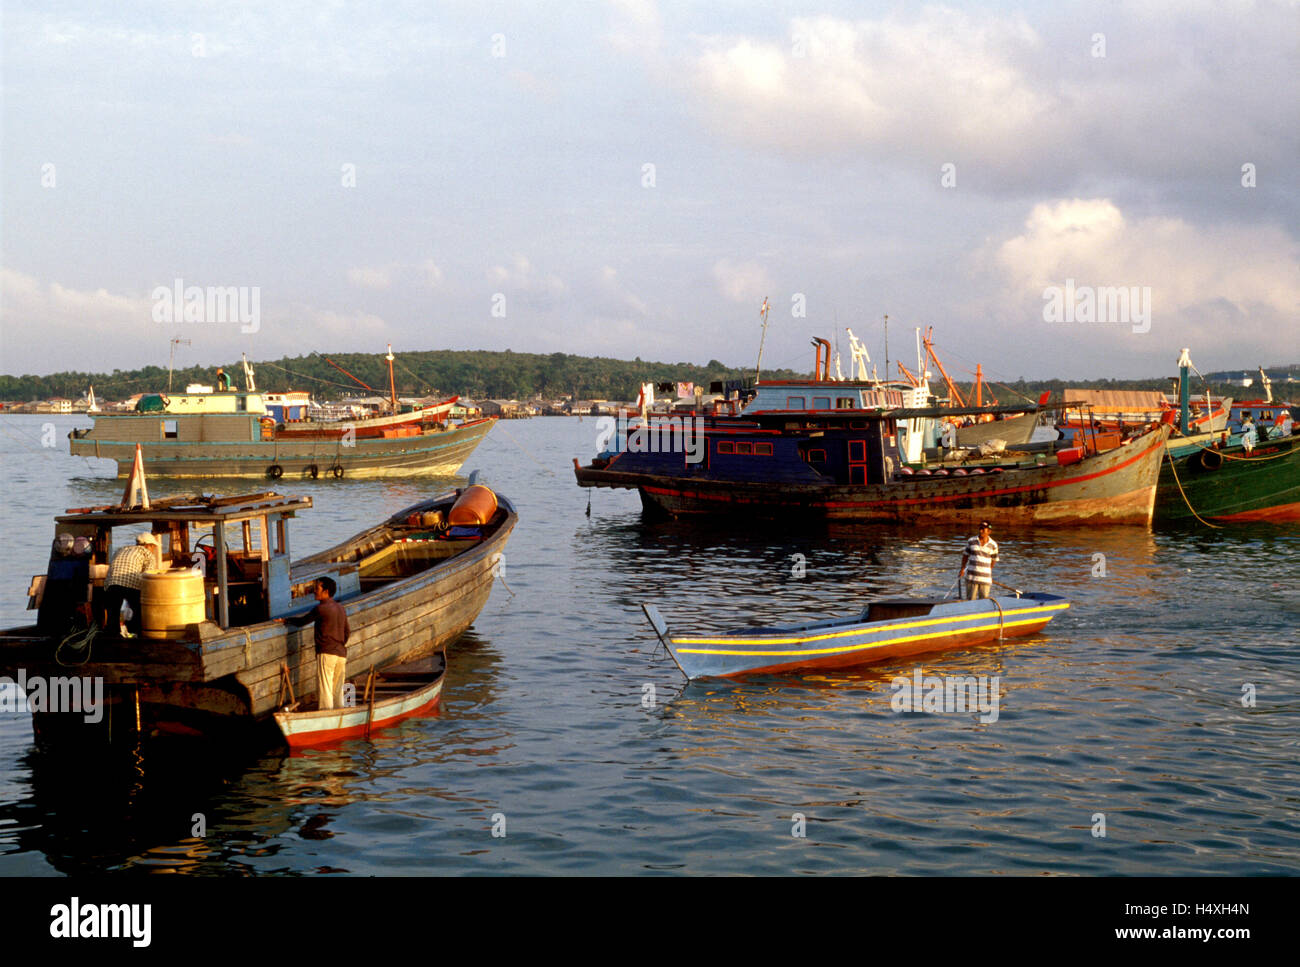 Indonesia Bintan tanjung pinang harbor scene Stock Photo